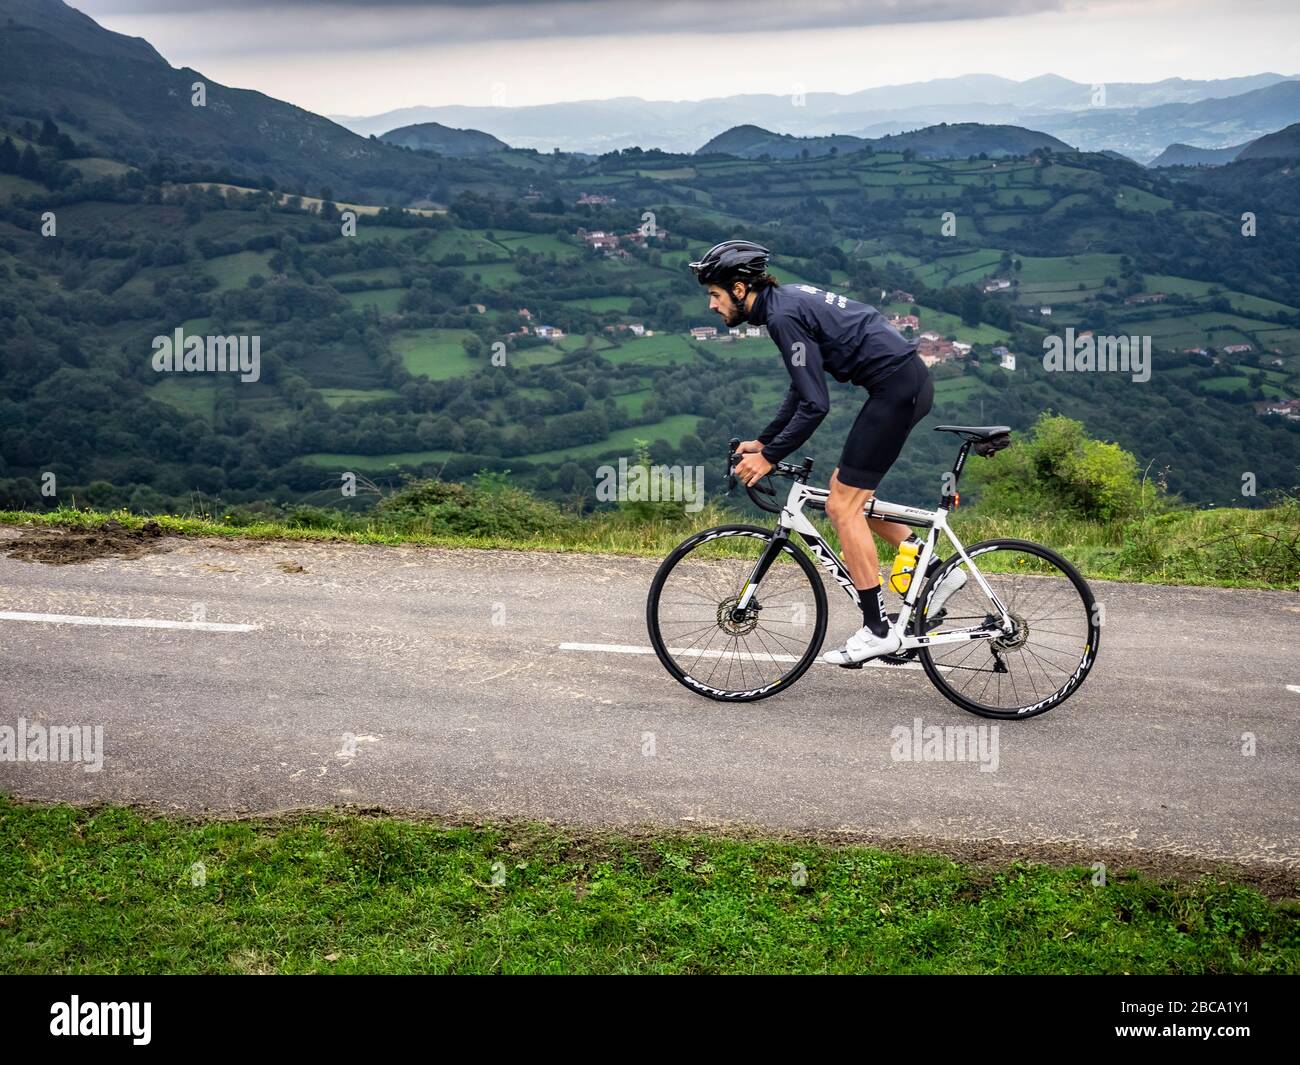 Ciclismo su strada nelle Asturie, nel nord della Spagna. Ciclisti su strada in montagna fino alla cima di Angliru, un mitico arrivo di montagna della Vuelta a España Foto Stock